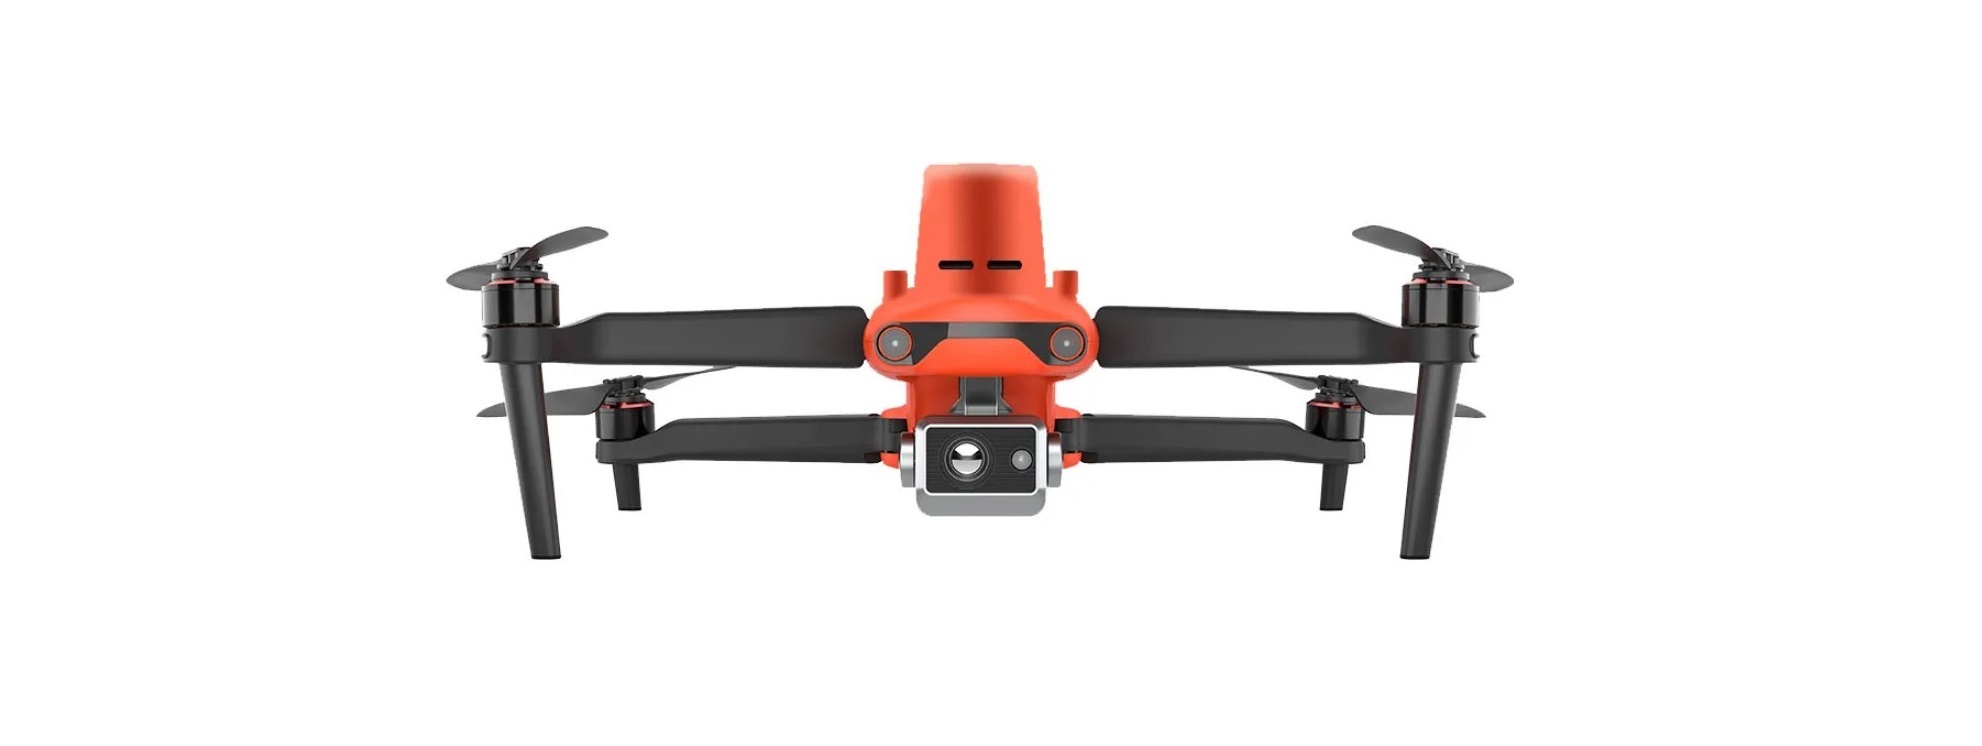 EVO II RTK V3 Series Rugged Bundle Camera Drone